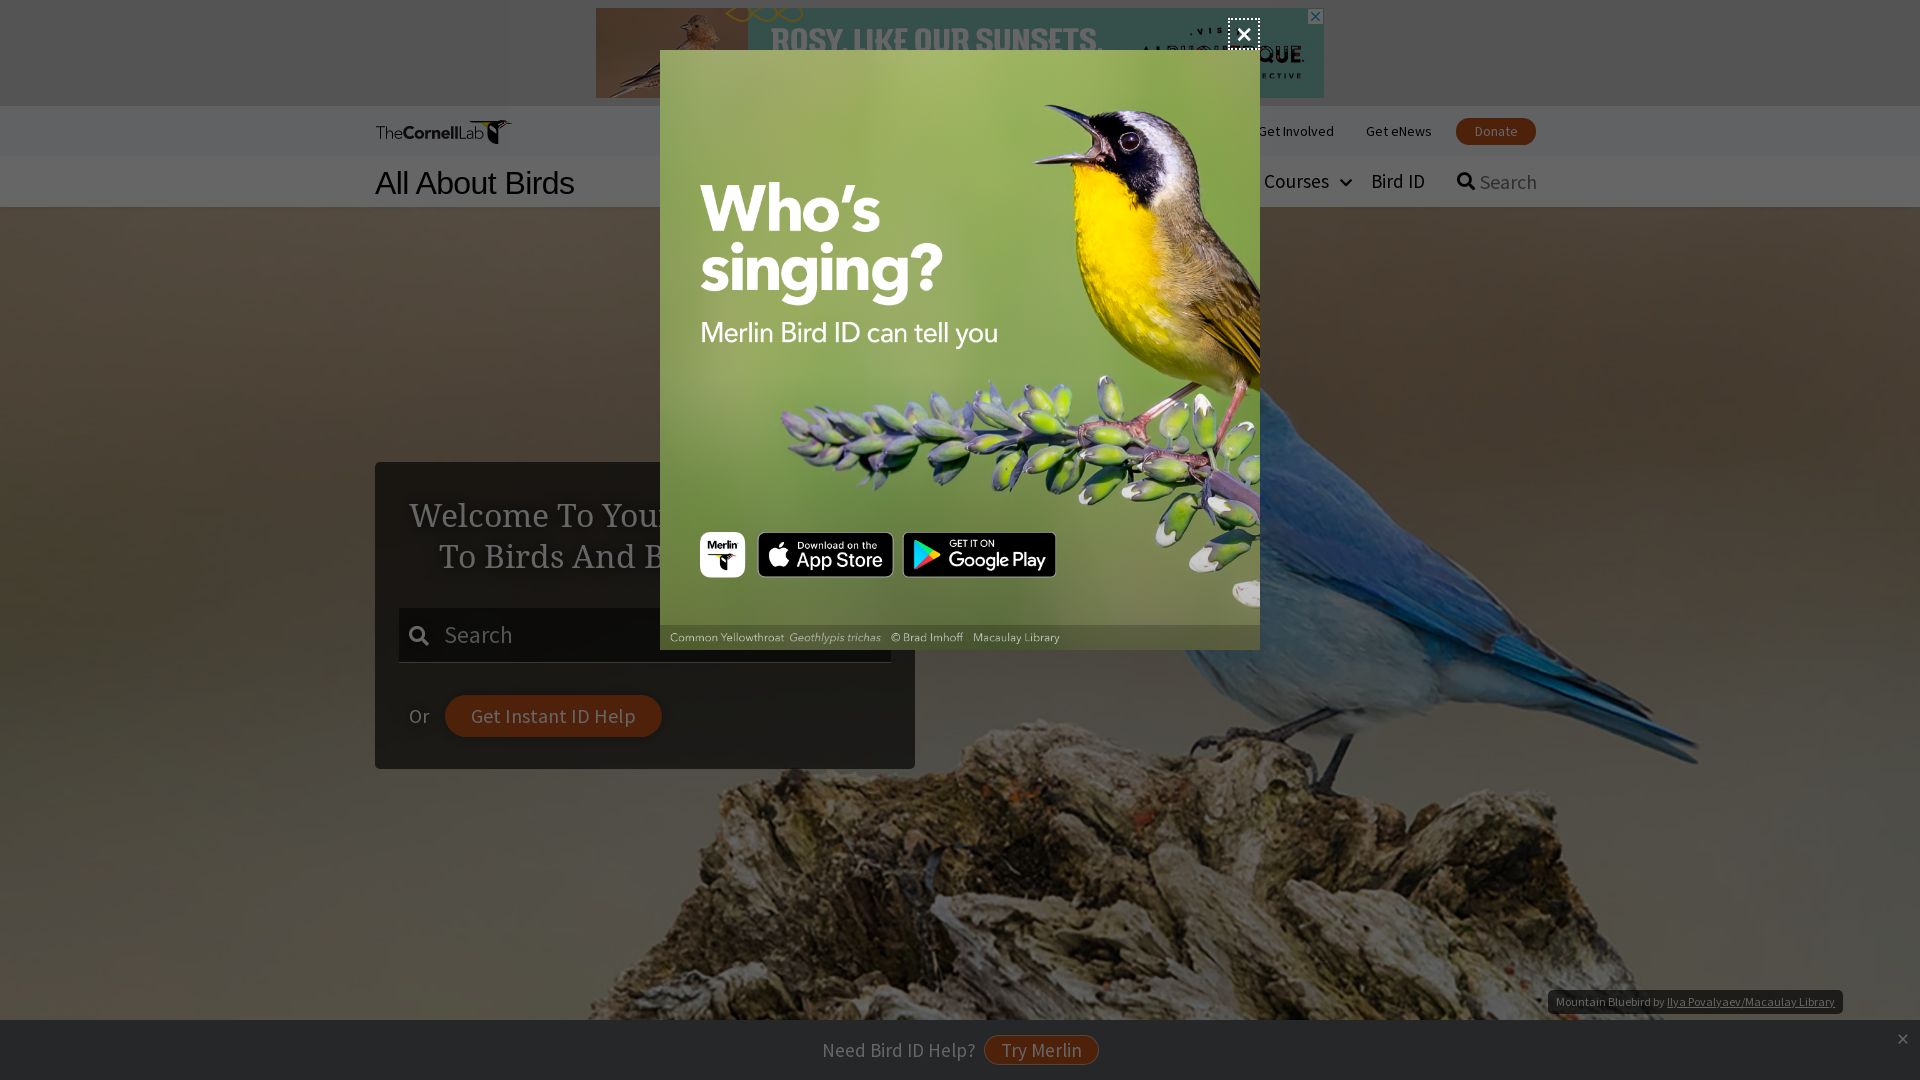 Stato del sito web allaboutbirds.org è   ONLINE